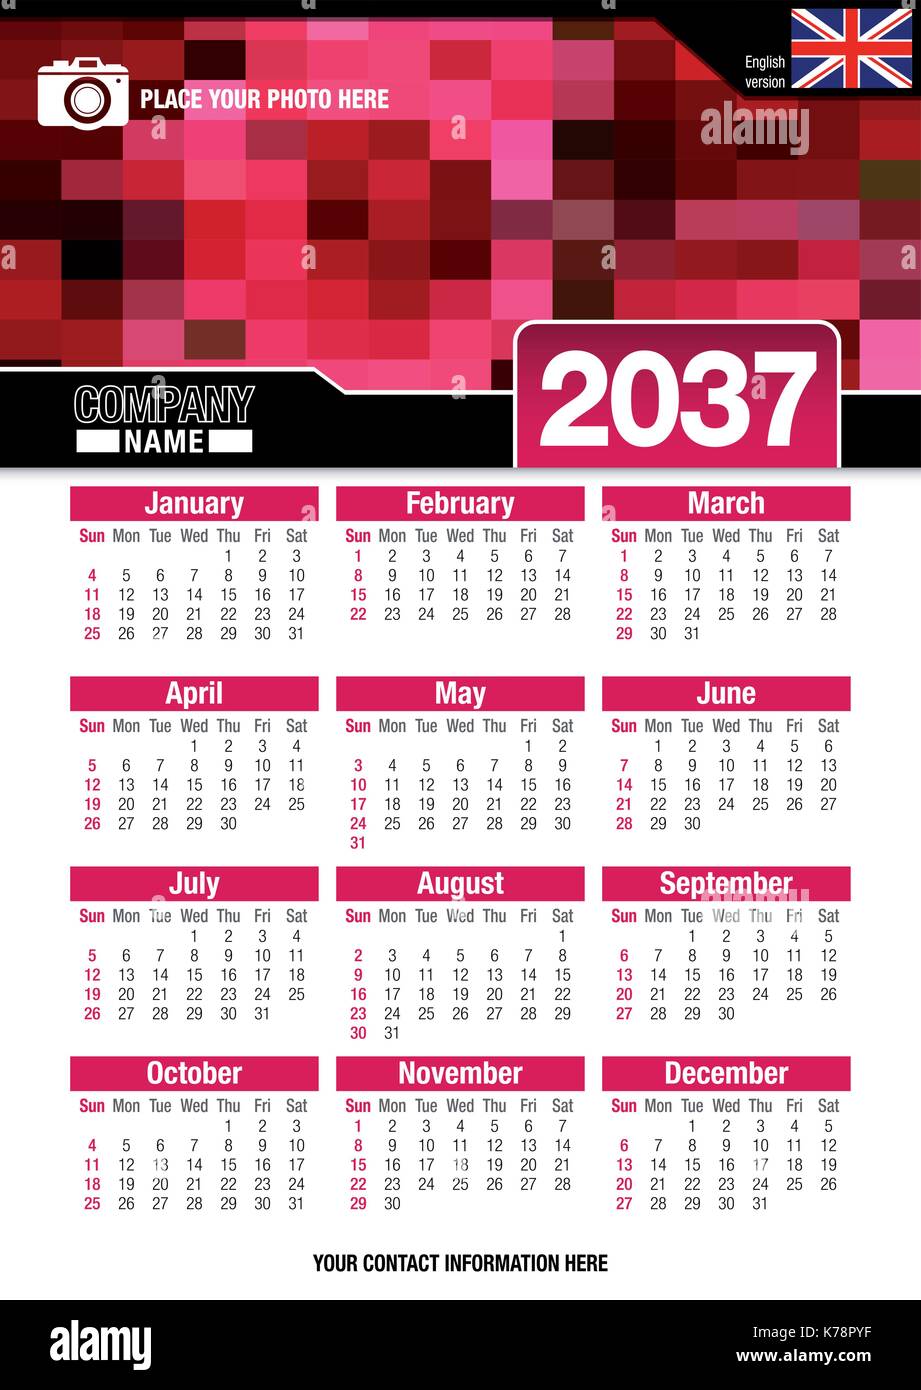 Utile calendario da parete 2037 con design di colori rosso mosaico. Formato A4 verticale. Dimensioni: 210mm x 297mm. Versione Inglese - immagine vettoriale Illustrazione Vettoriale